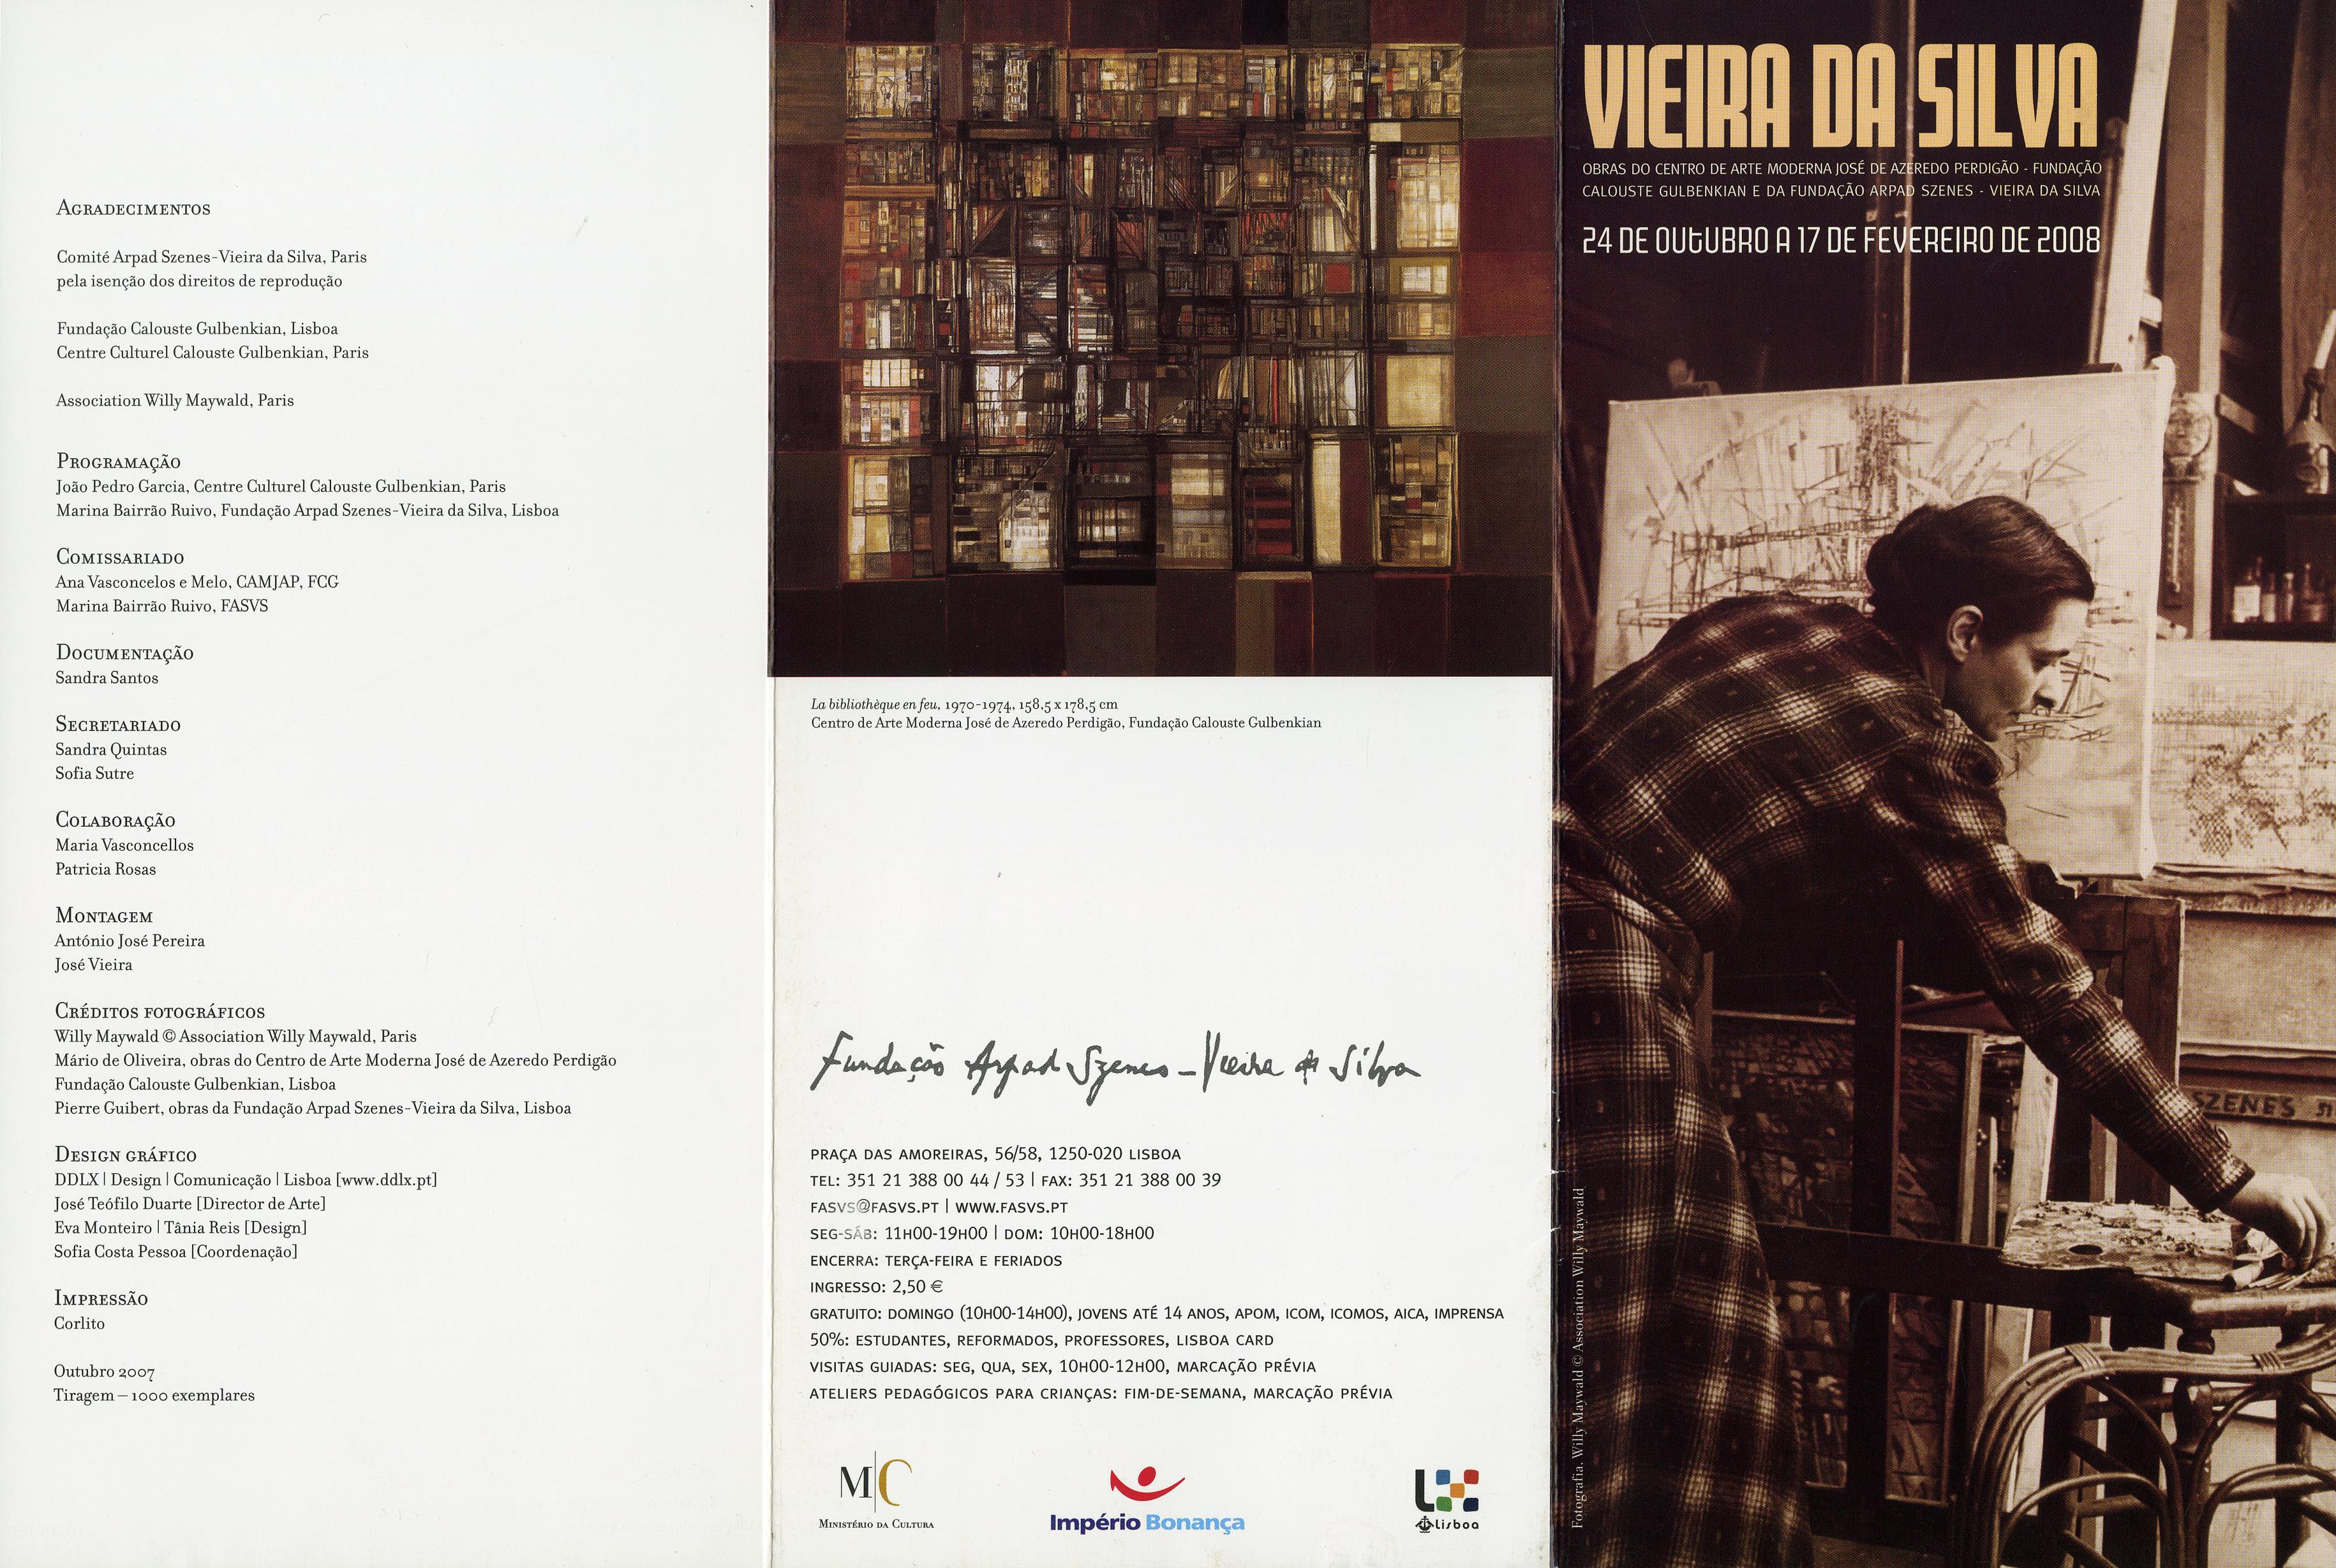 Vieira da Silva. Œuvres de la Fondation Arpad Szenes-Vieira da Silva et du Centre d'Art Moderne José de Azeredo Perdigão